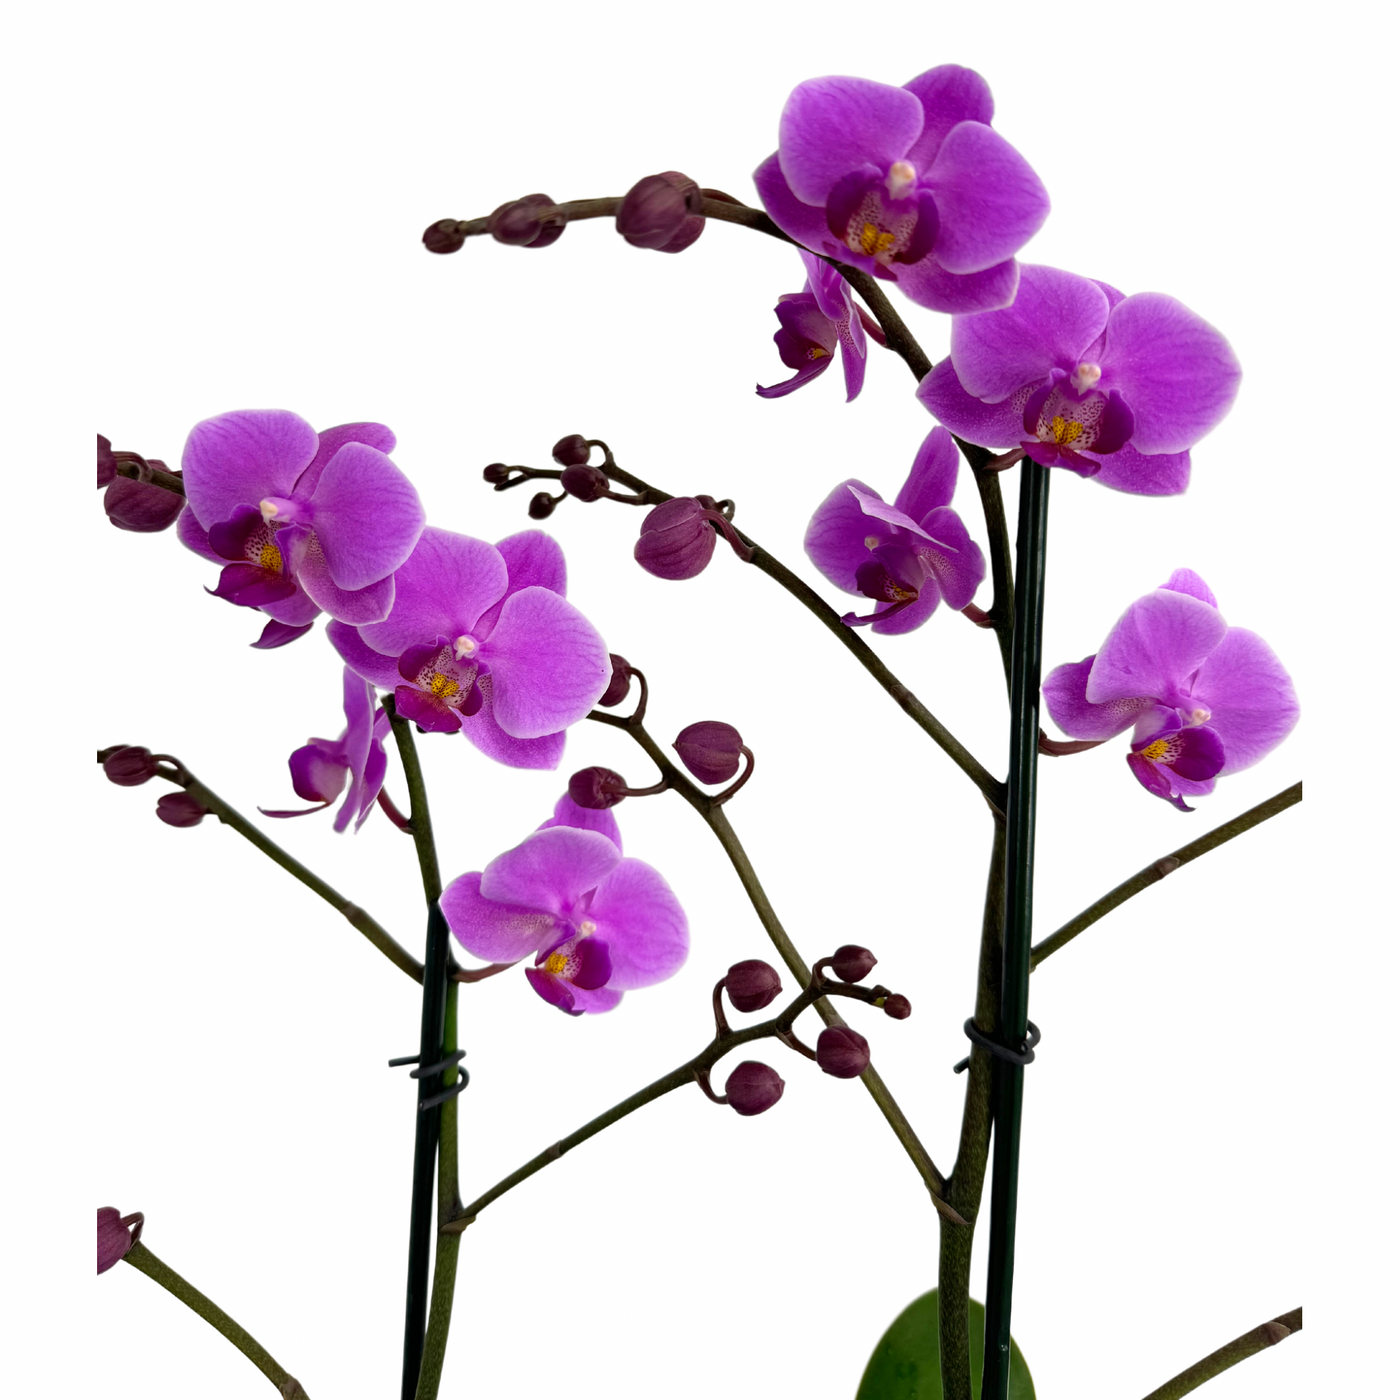 Double Purple Orchids Plants